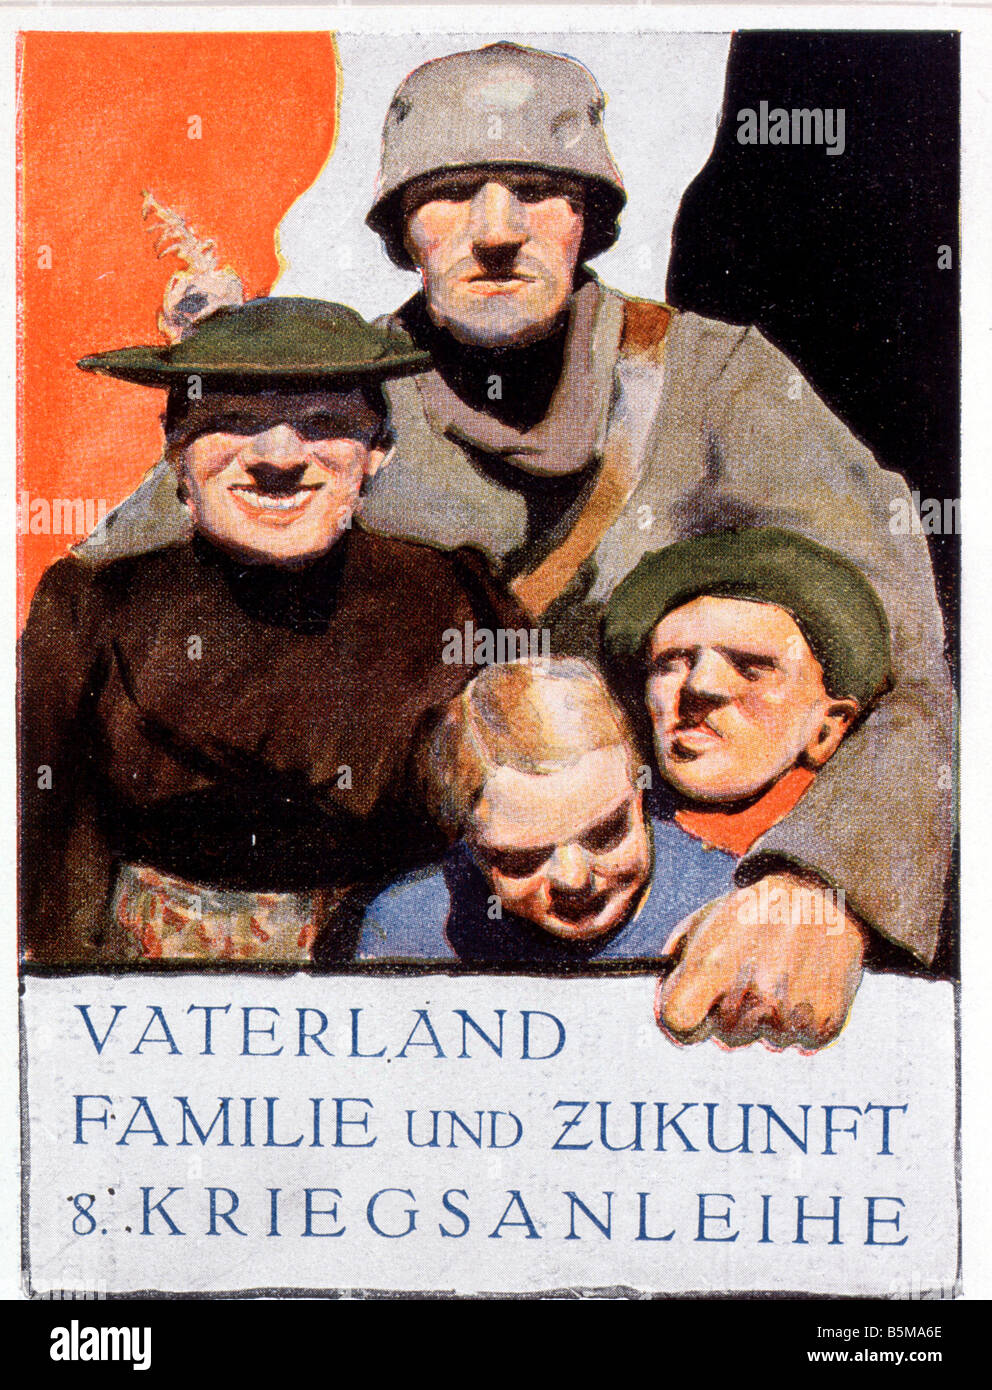 2 G55 P1 1918 4 E German war loan poster World War I History World War I Propaganda Fatherland Family Future 8 War Loan Austrian Stock Photo